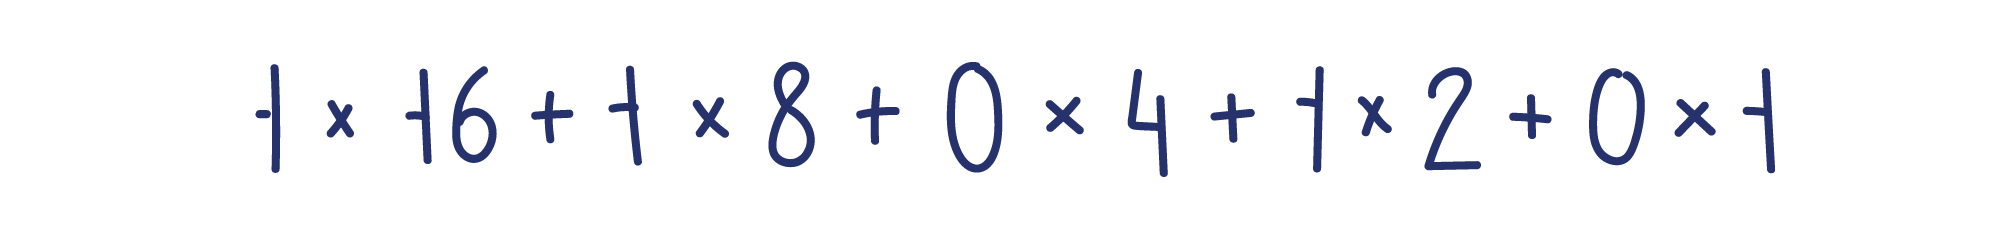 1×16+1×8+0×4+1×2+0×1